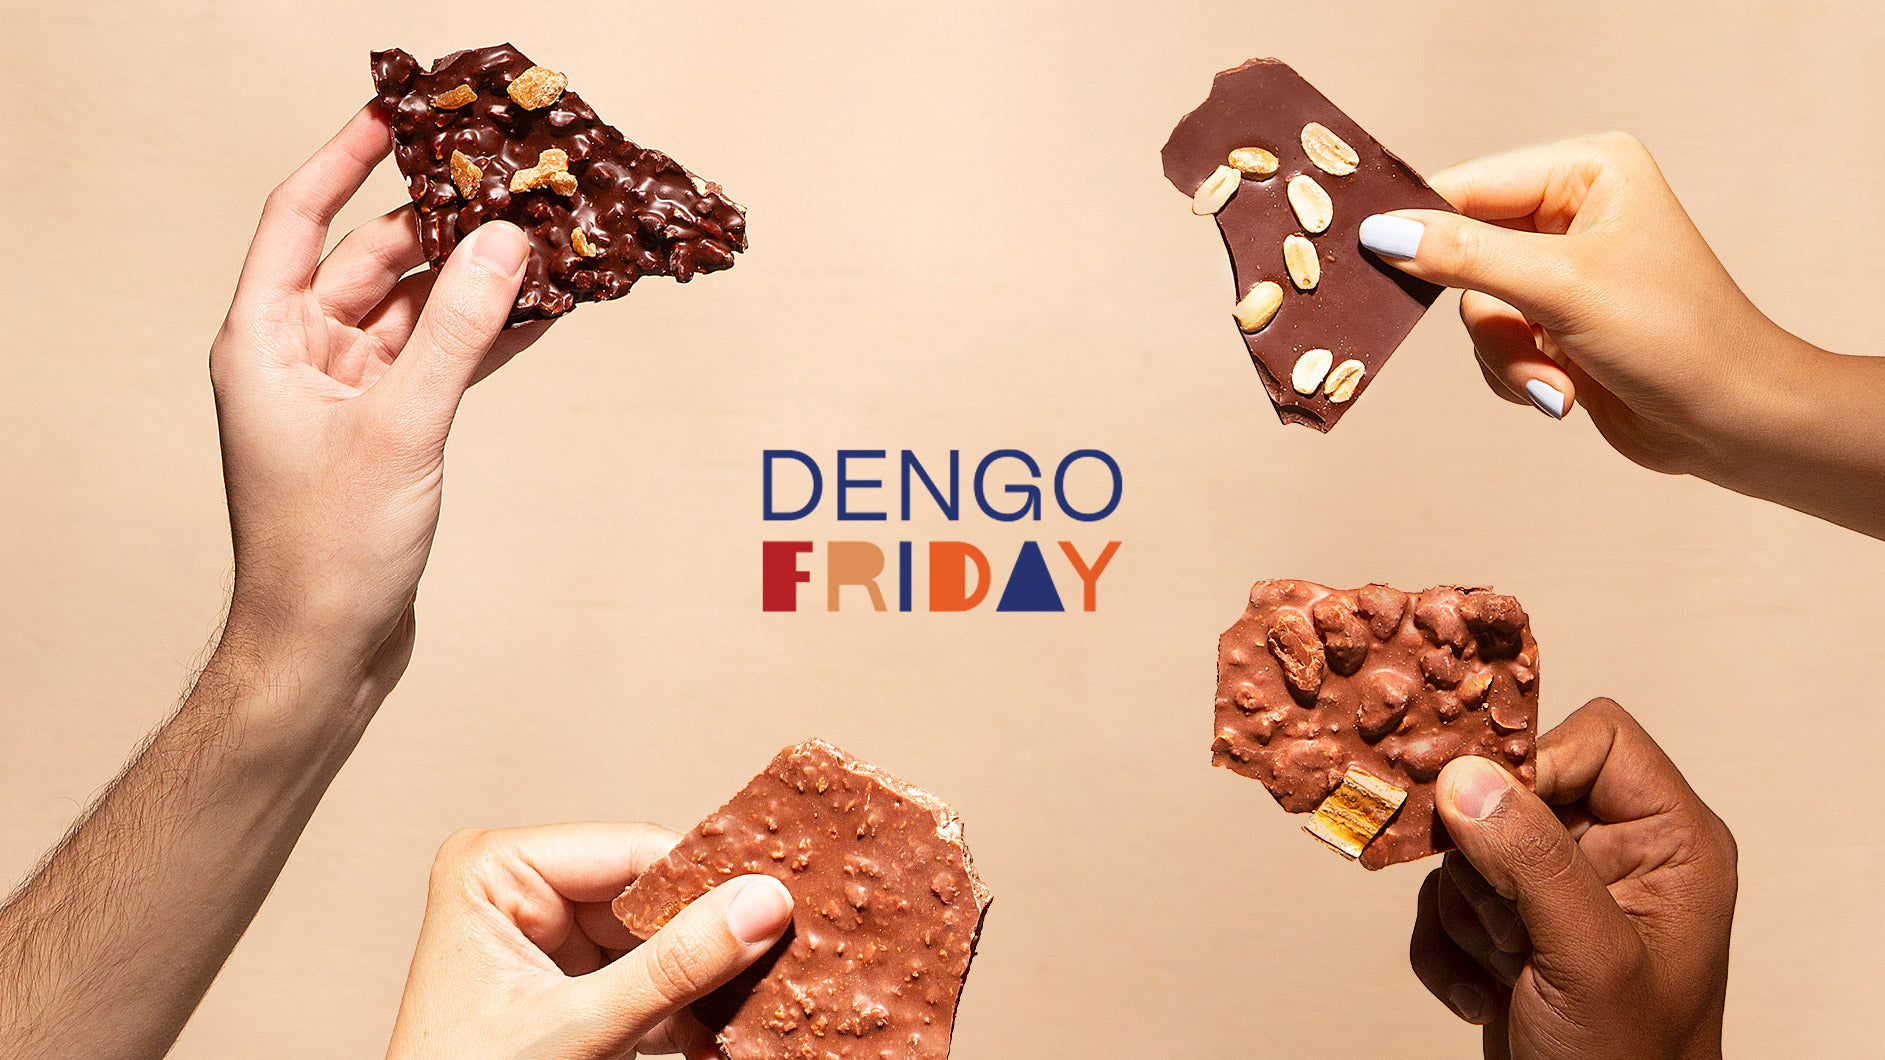 Dengo Friday: como funciona?